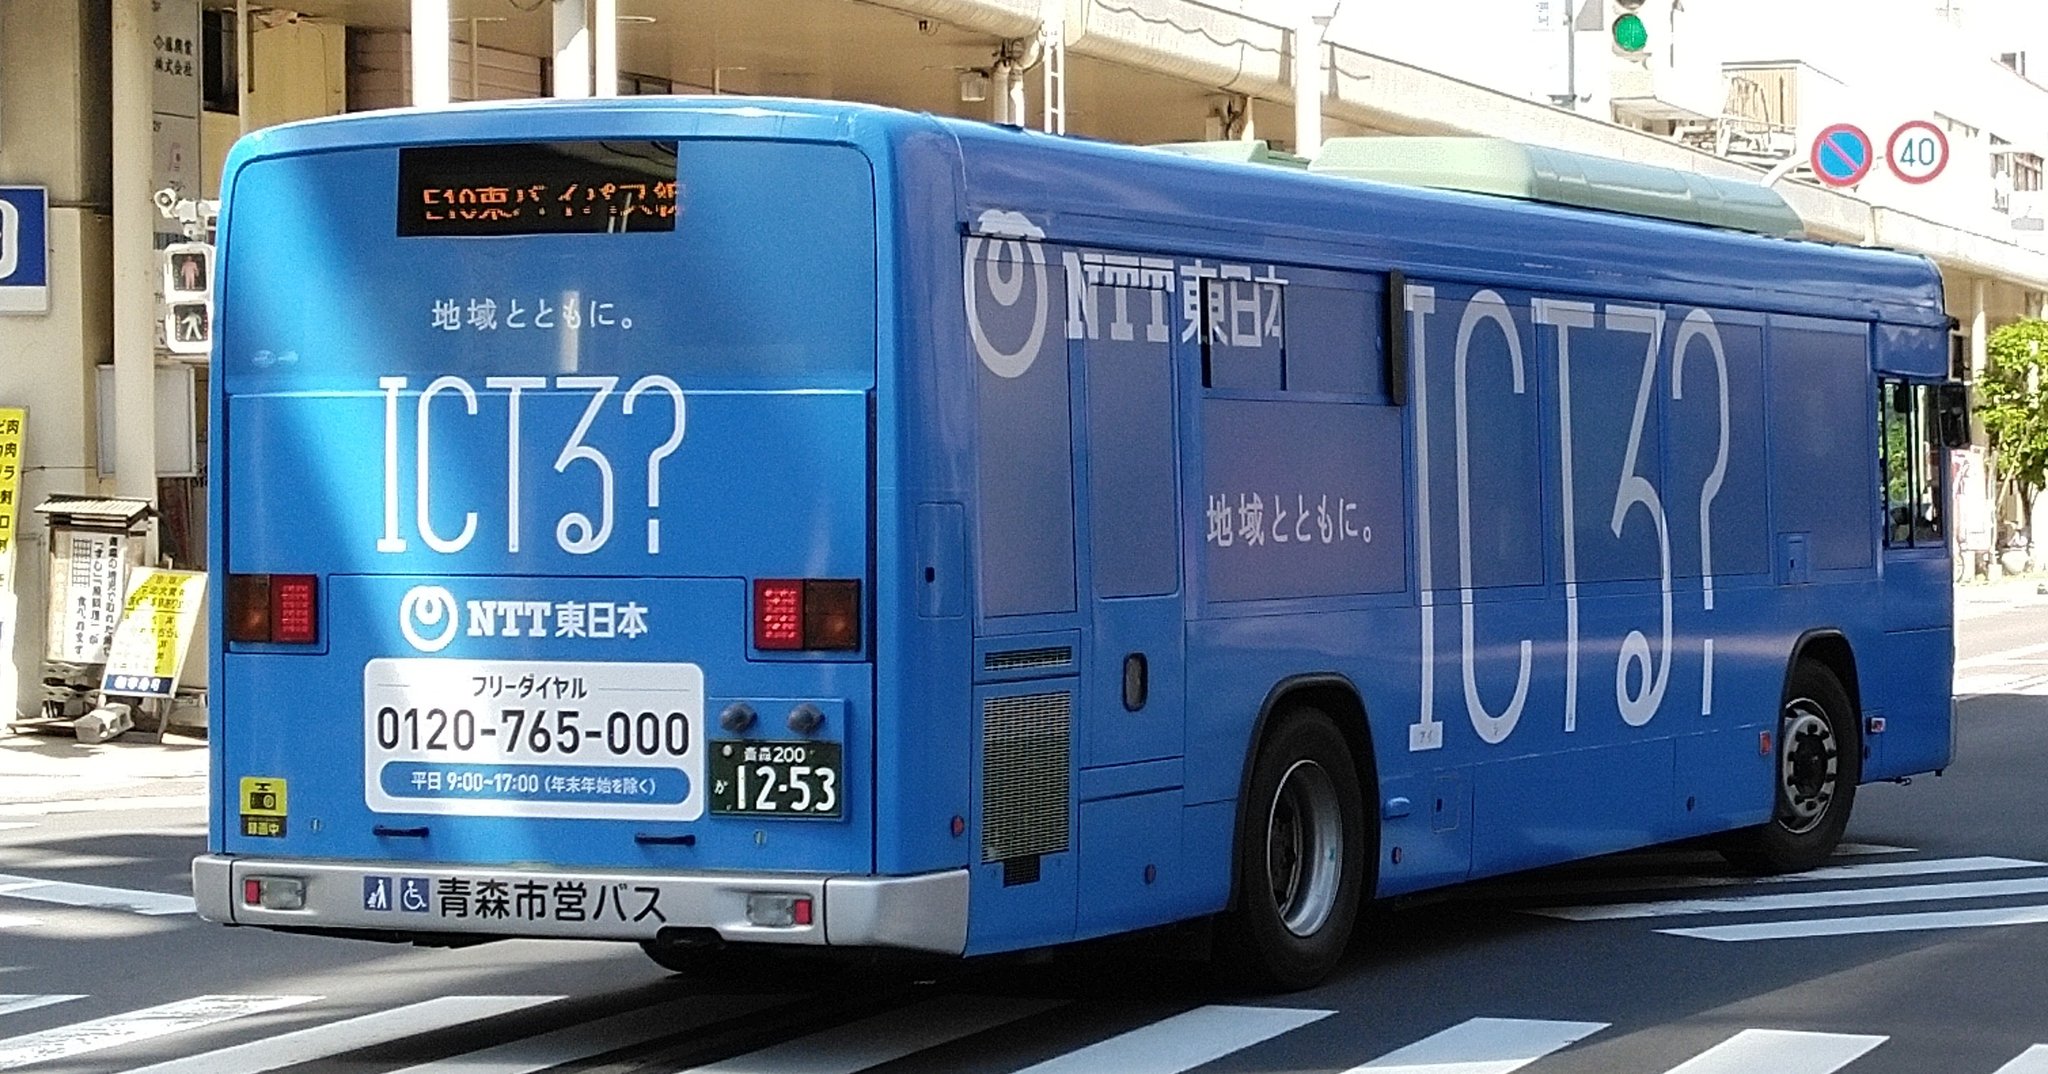 NTT東日本ラッピングバス